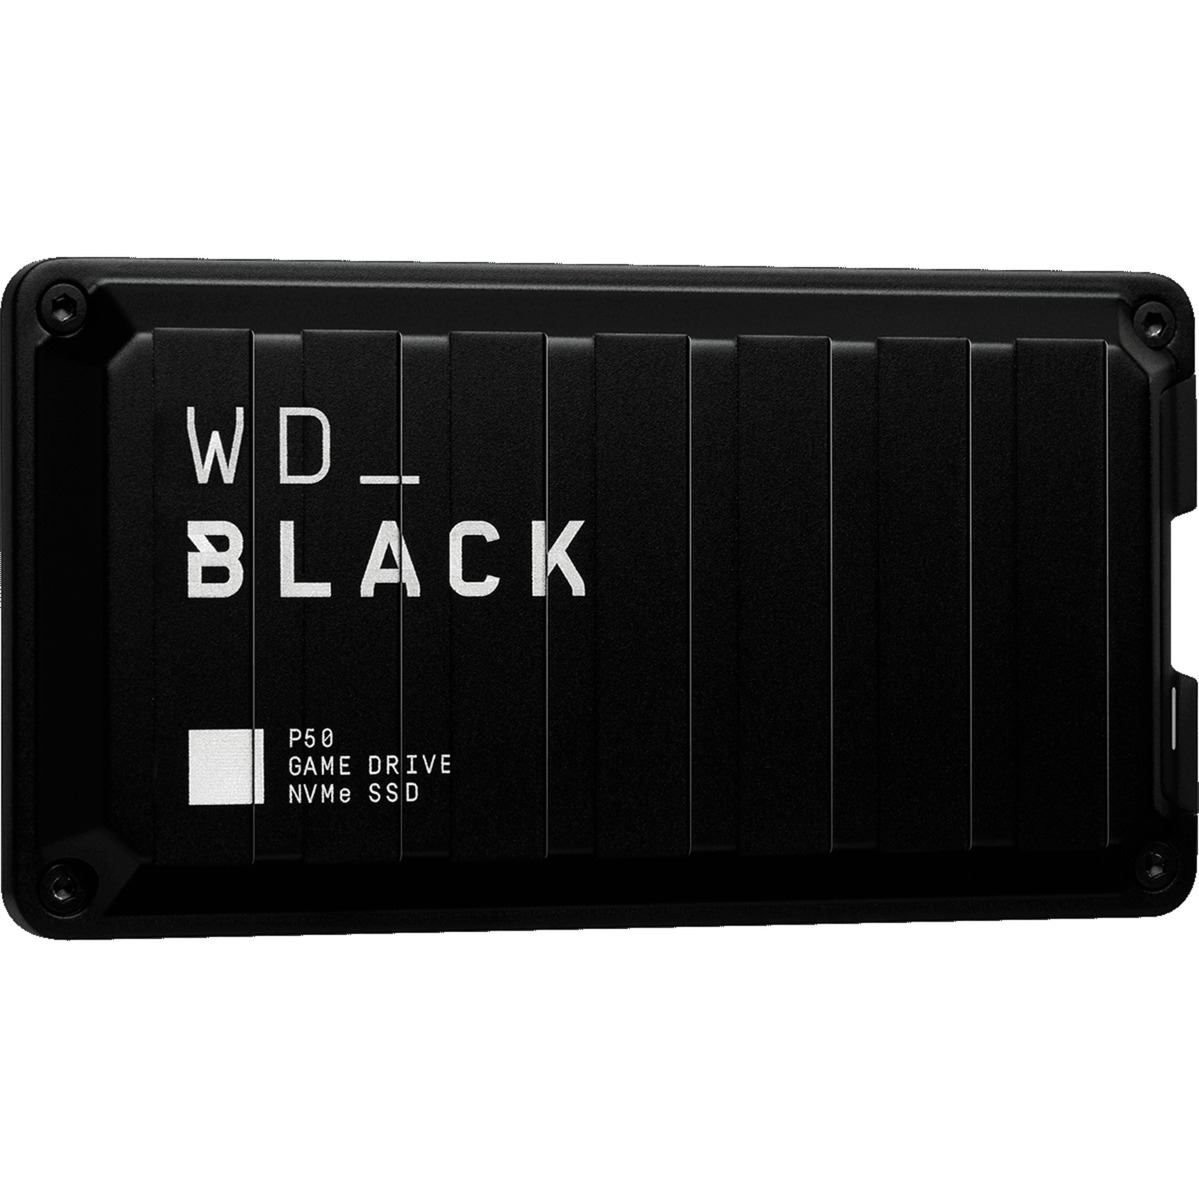 Image of Alternate - Black P50 Game Drive SSD 1 TB, Externe SSD online einkaufen bei Alternate